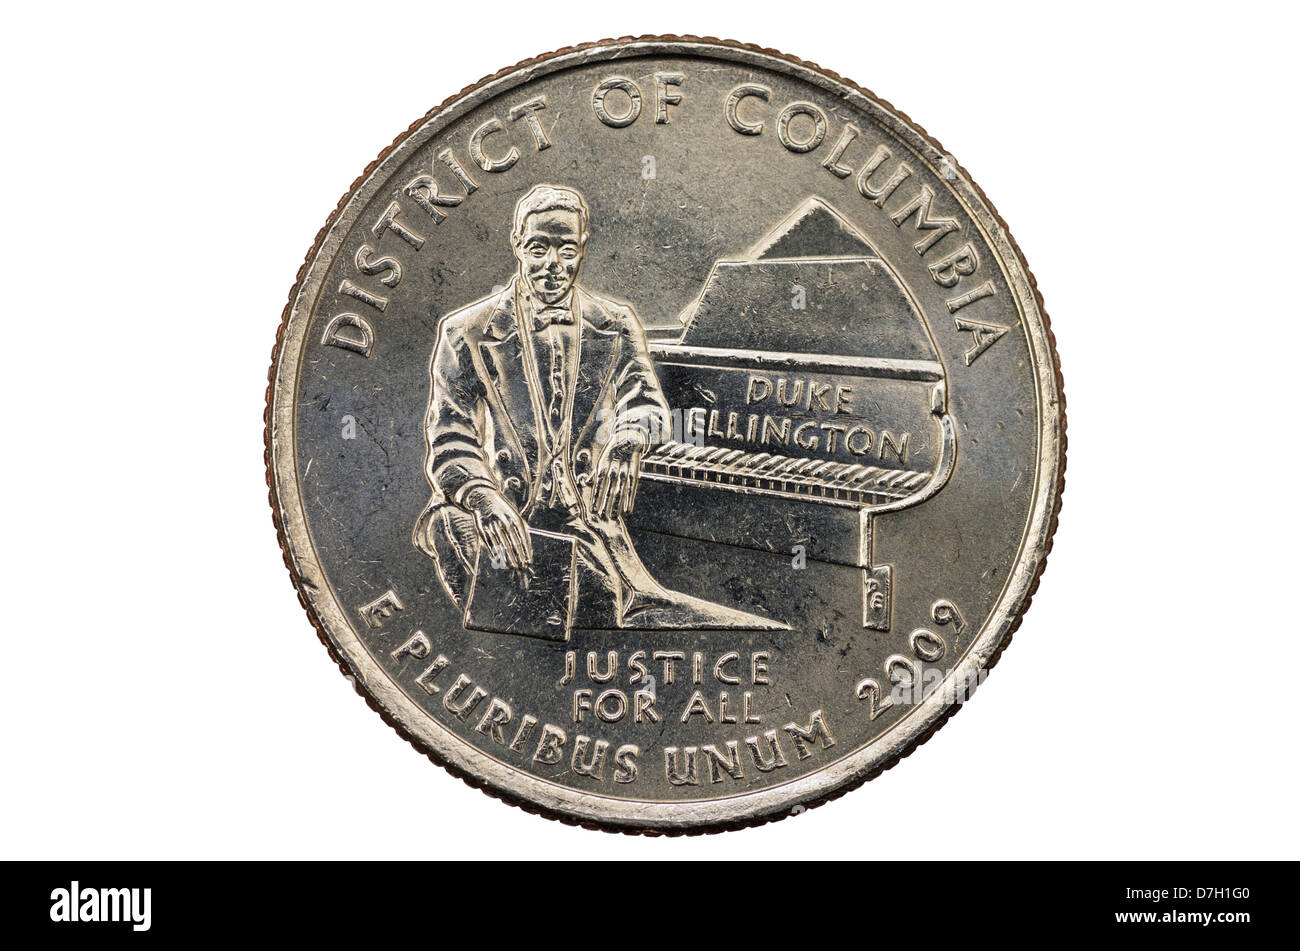 District Of Columbia oder DC Quartal Gedenkmünze mit Duke Ellington auf weißem Hintergrund Stockfoto